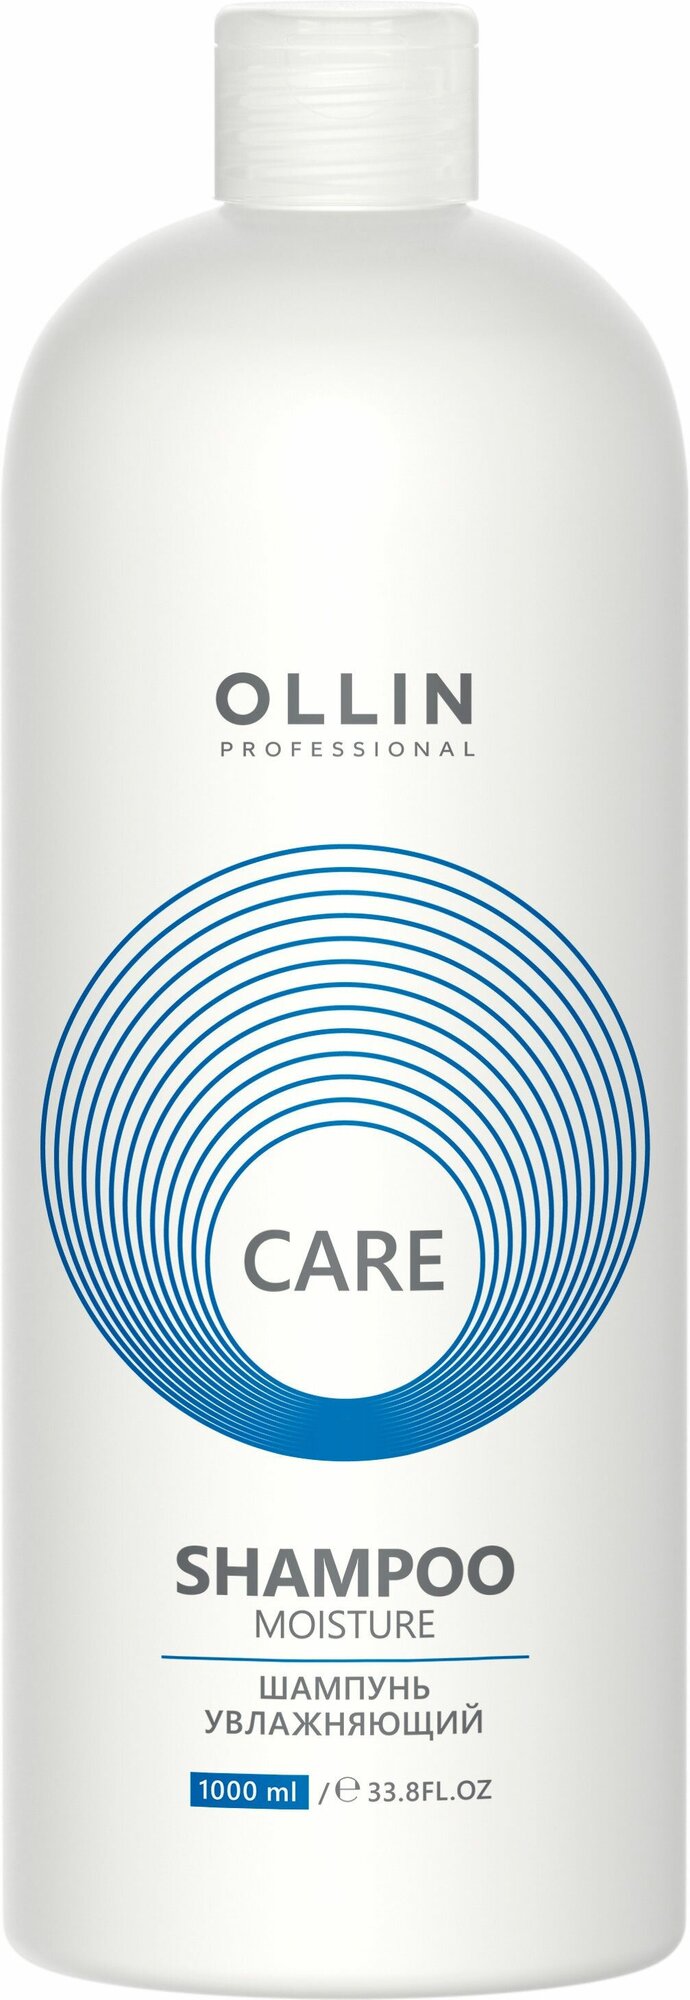 Шампунь для волос Ollin Professional care для сухих волос